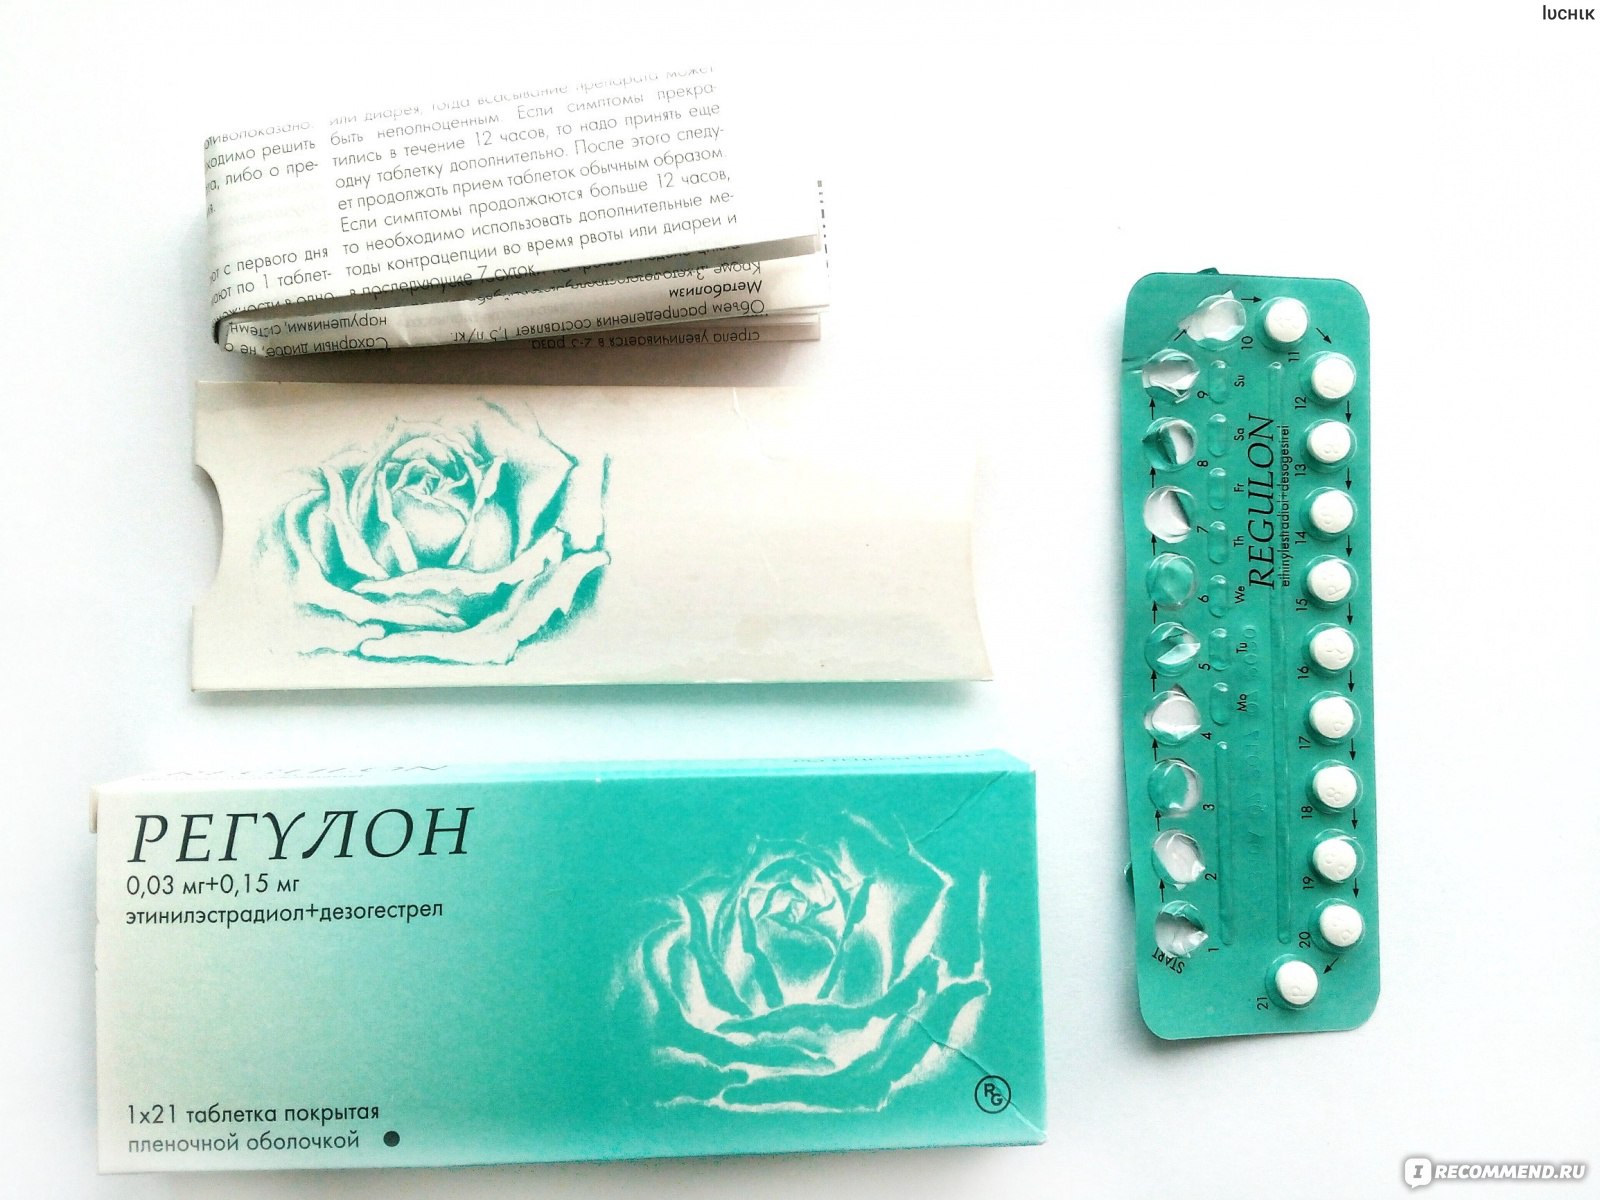 Сильные противозачаточные таблетки. Противозачаточные препараты регулон. Гормональные таблетки контрацептивы регулон. Гедеон Рихтер противозачаточные препараты. Противозачаточные таблетки регулон.